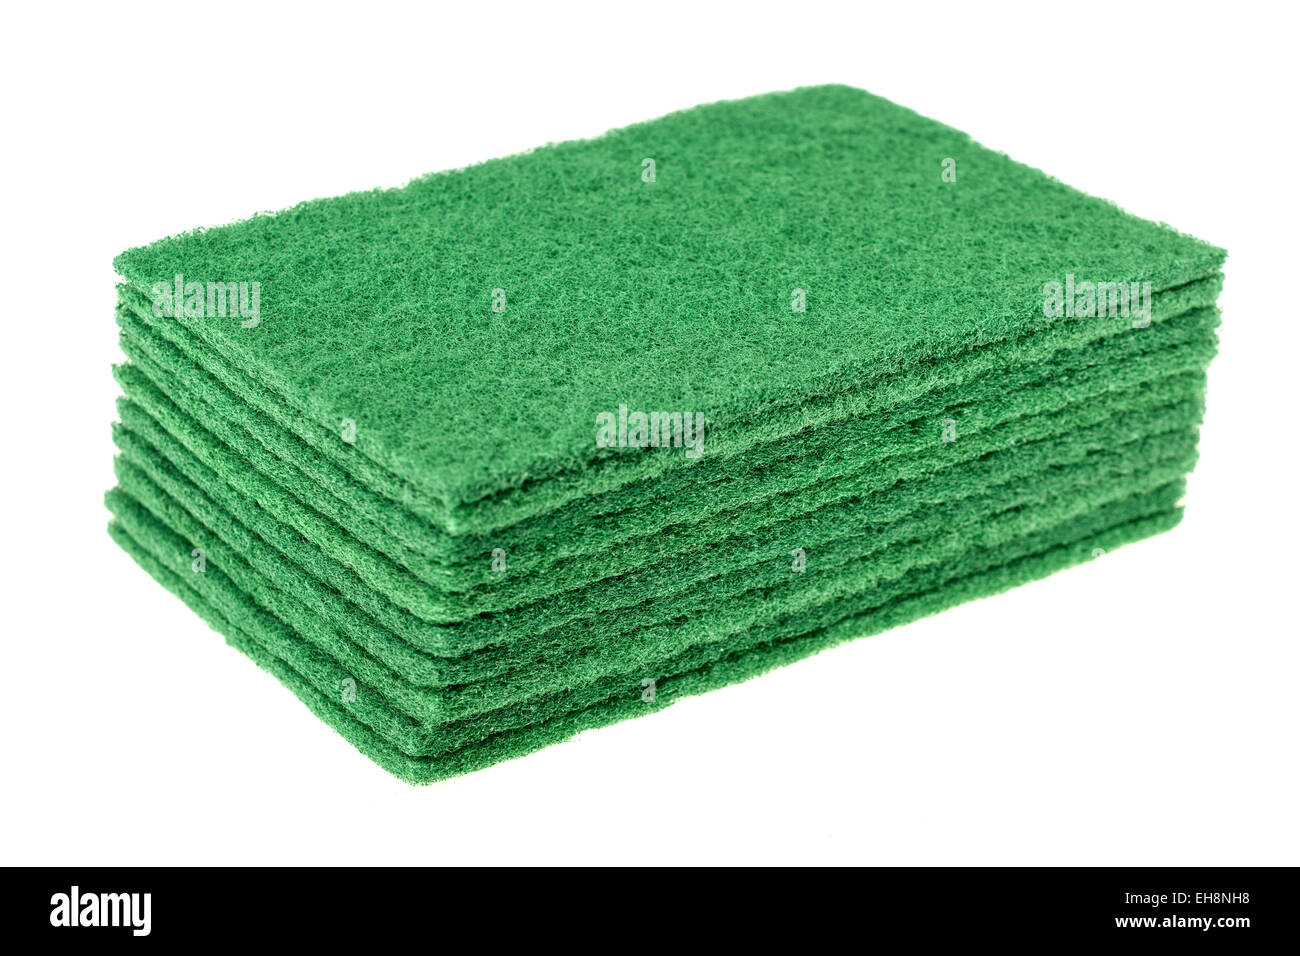 Zehn grüne Rechteck Schale Wäsche pads Stockfoto